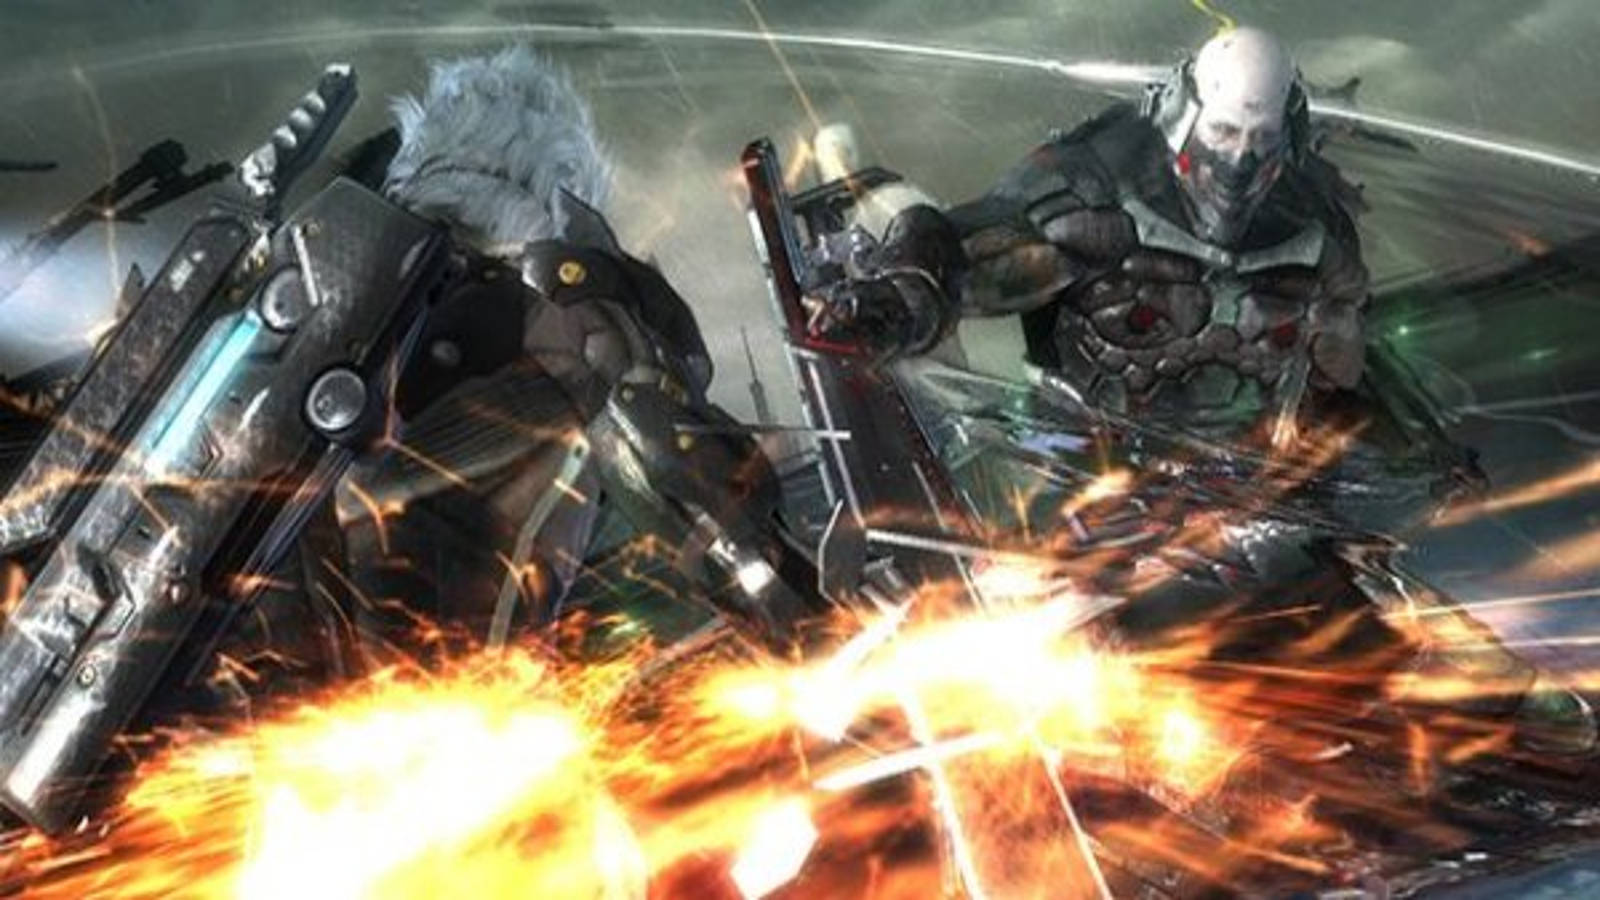 Metal Gear Rising: Revengeance release date, video